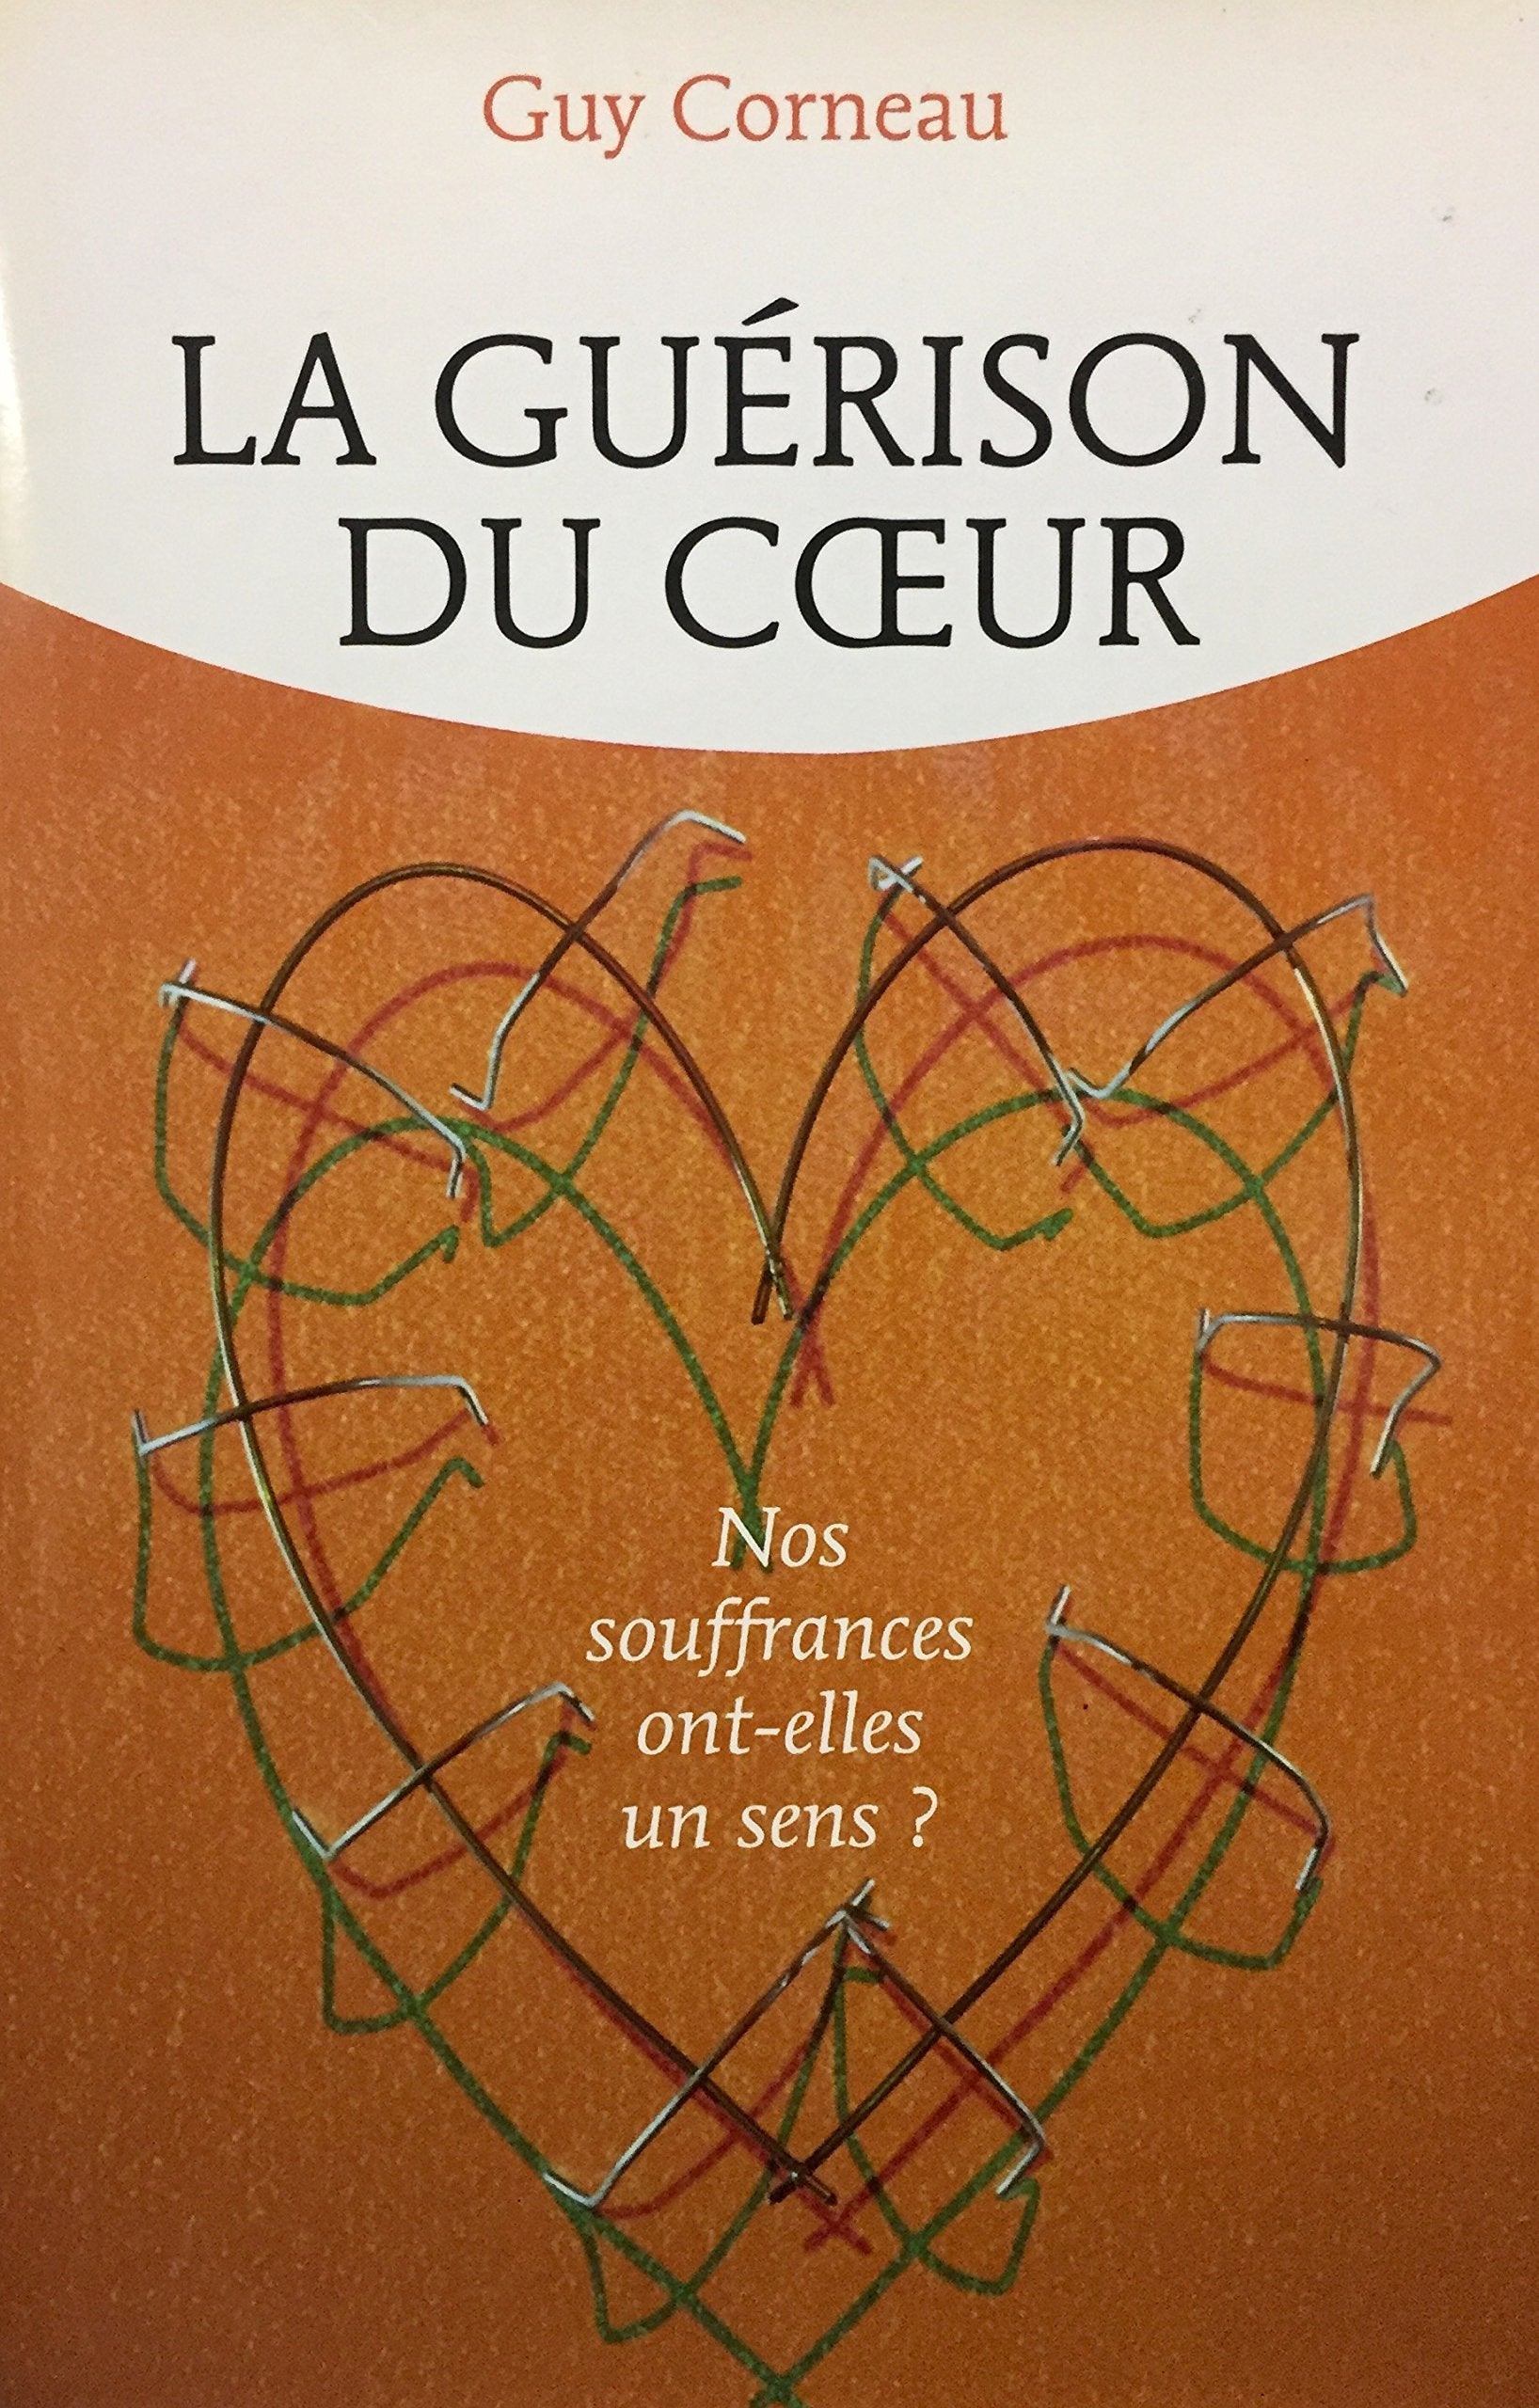 Livre ISBN 2894304404 La guérison du coeur : Nos souffrances ont-elles un sens? (Guy Corneau)